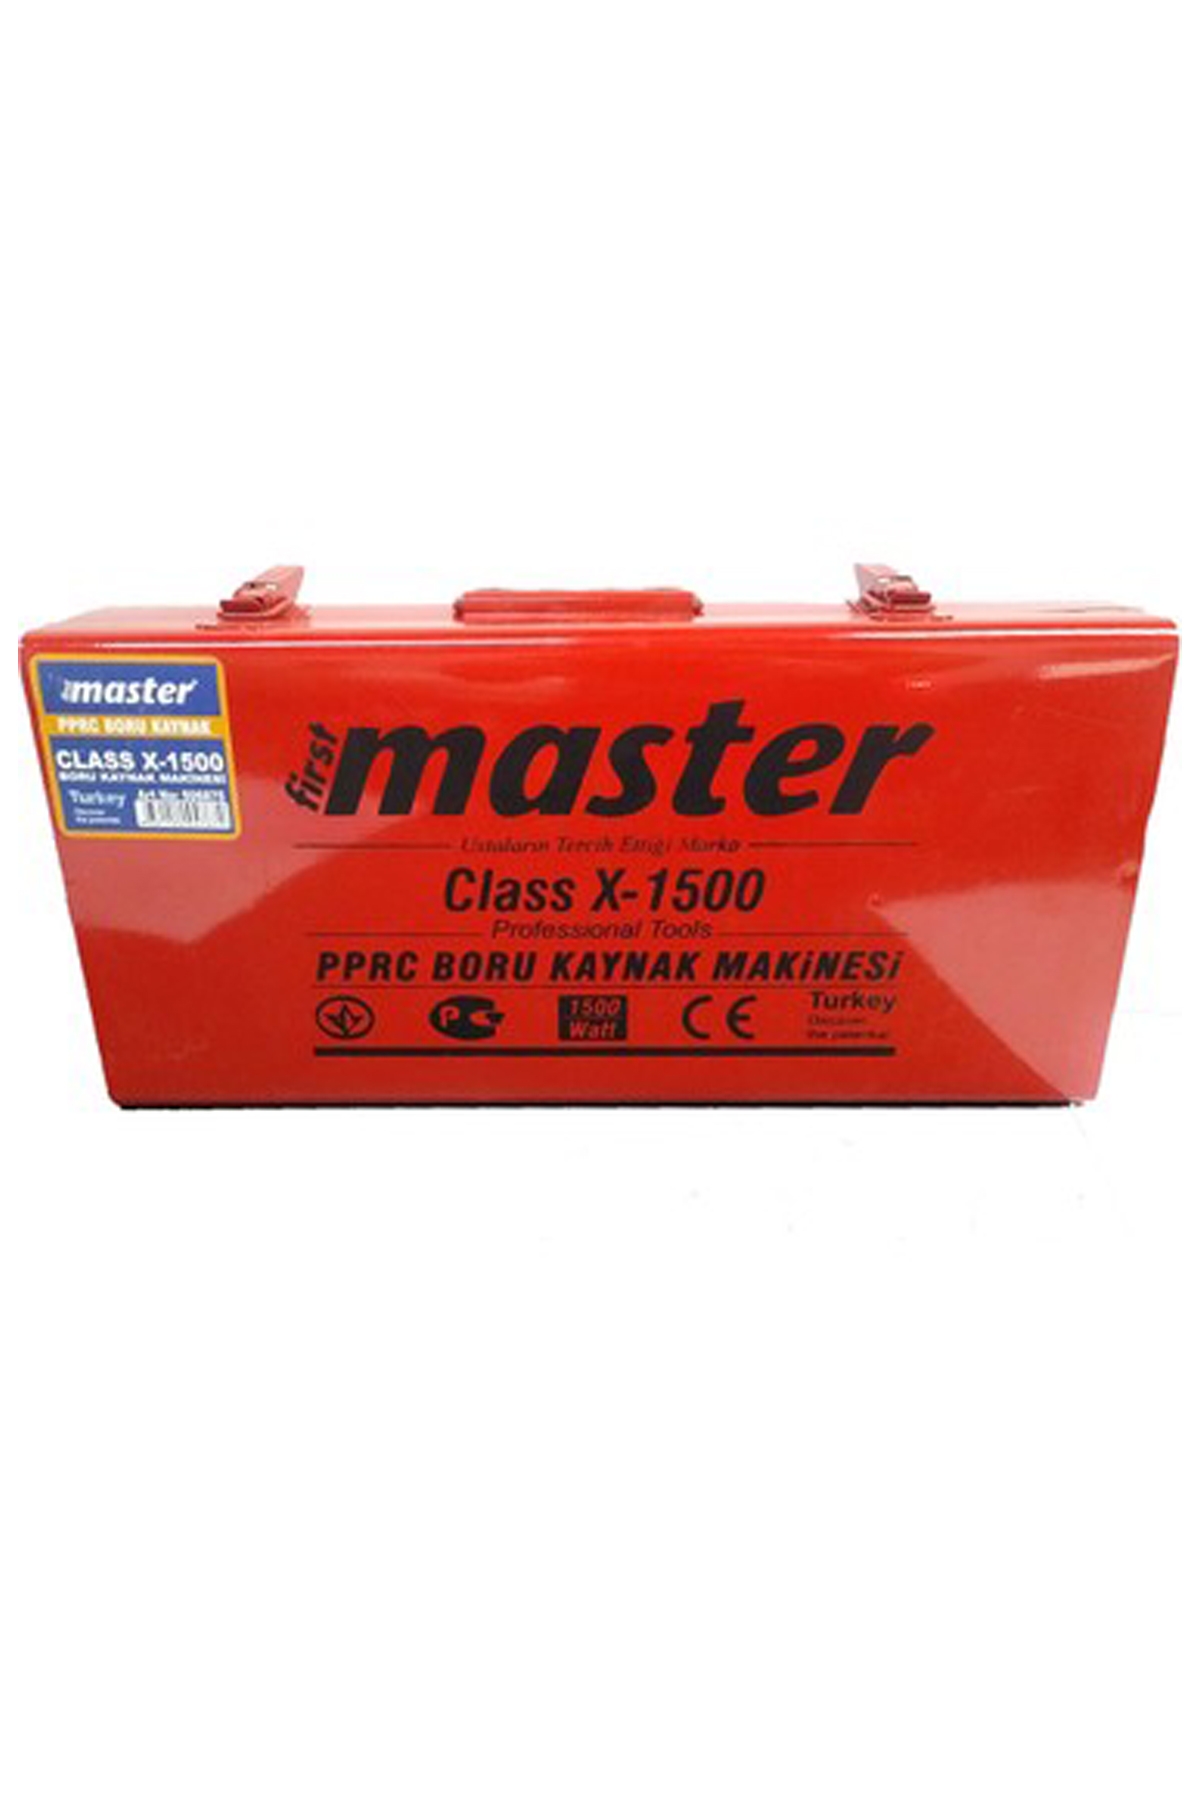 Master Boru Kaynak Makinesi Class X-1500